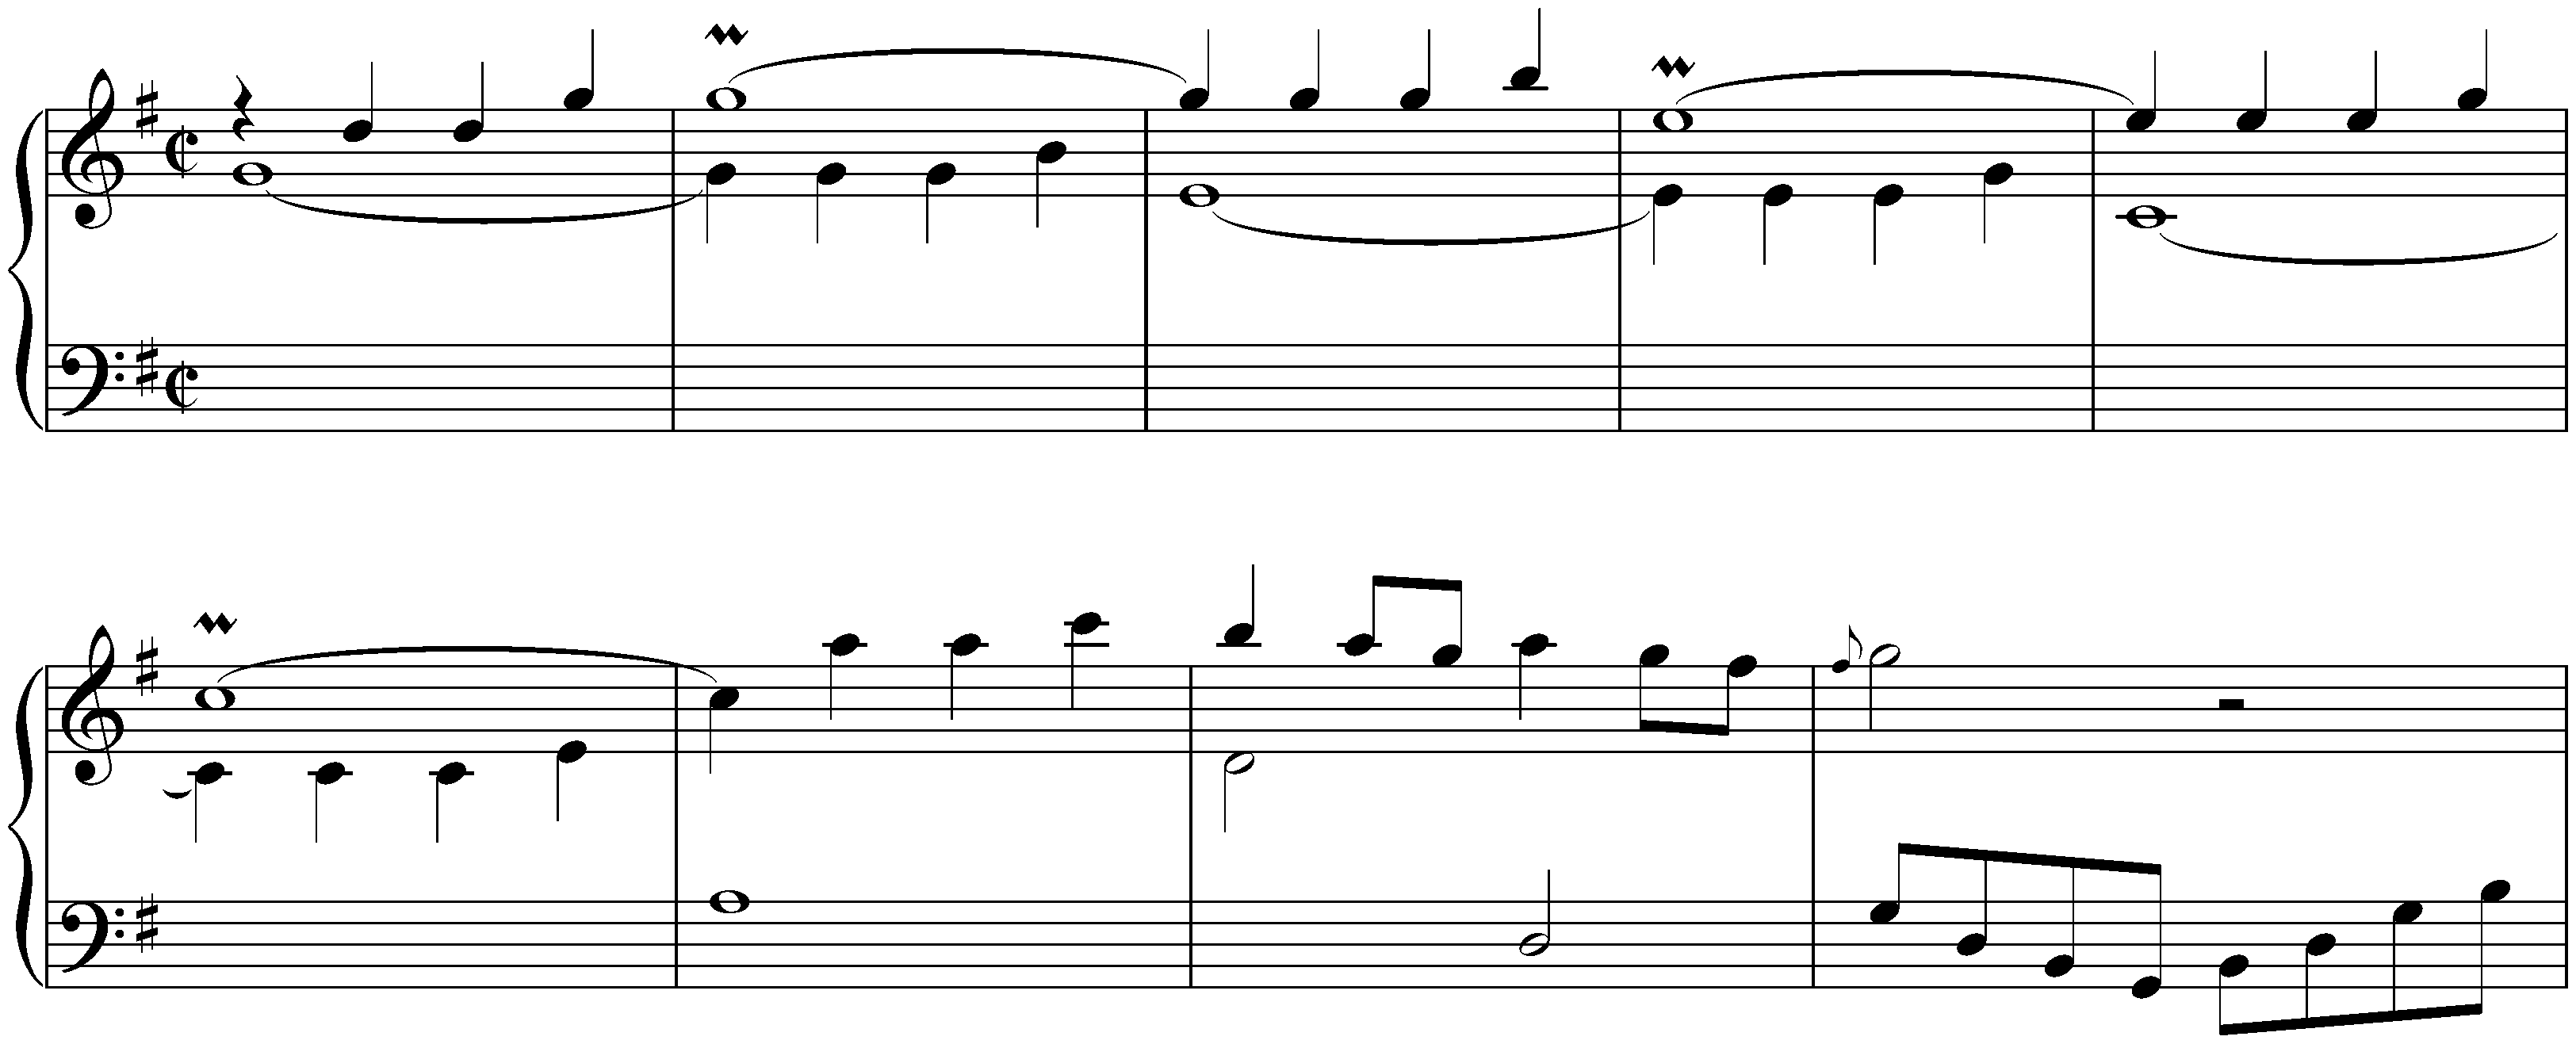 Sonatas found in Zaragoza; 4. G major